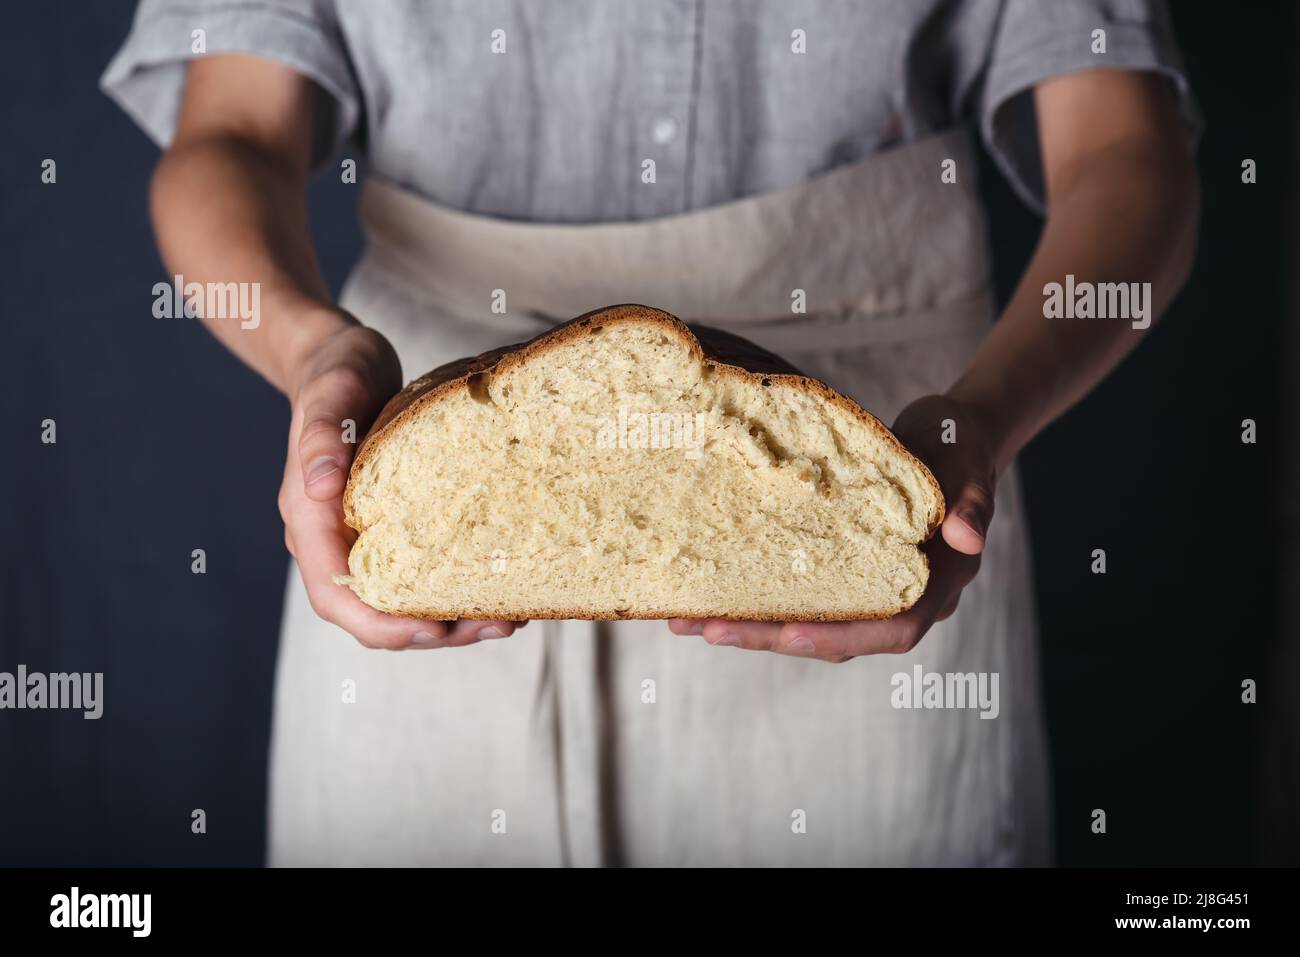 Manos femeninas sosteniendo medio pan casero recién horneado. Sin gluten, concepto de dieta saludable. Estilo rústico oscuro. Foto de stock